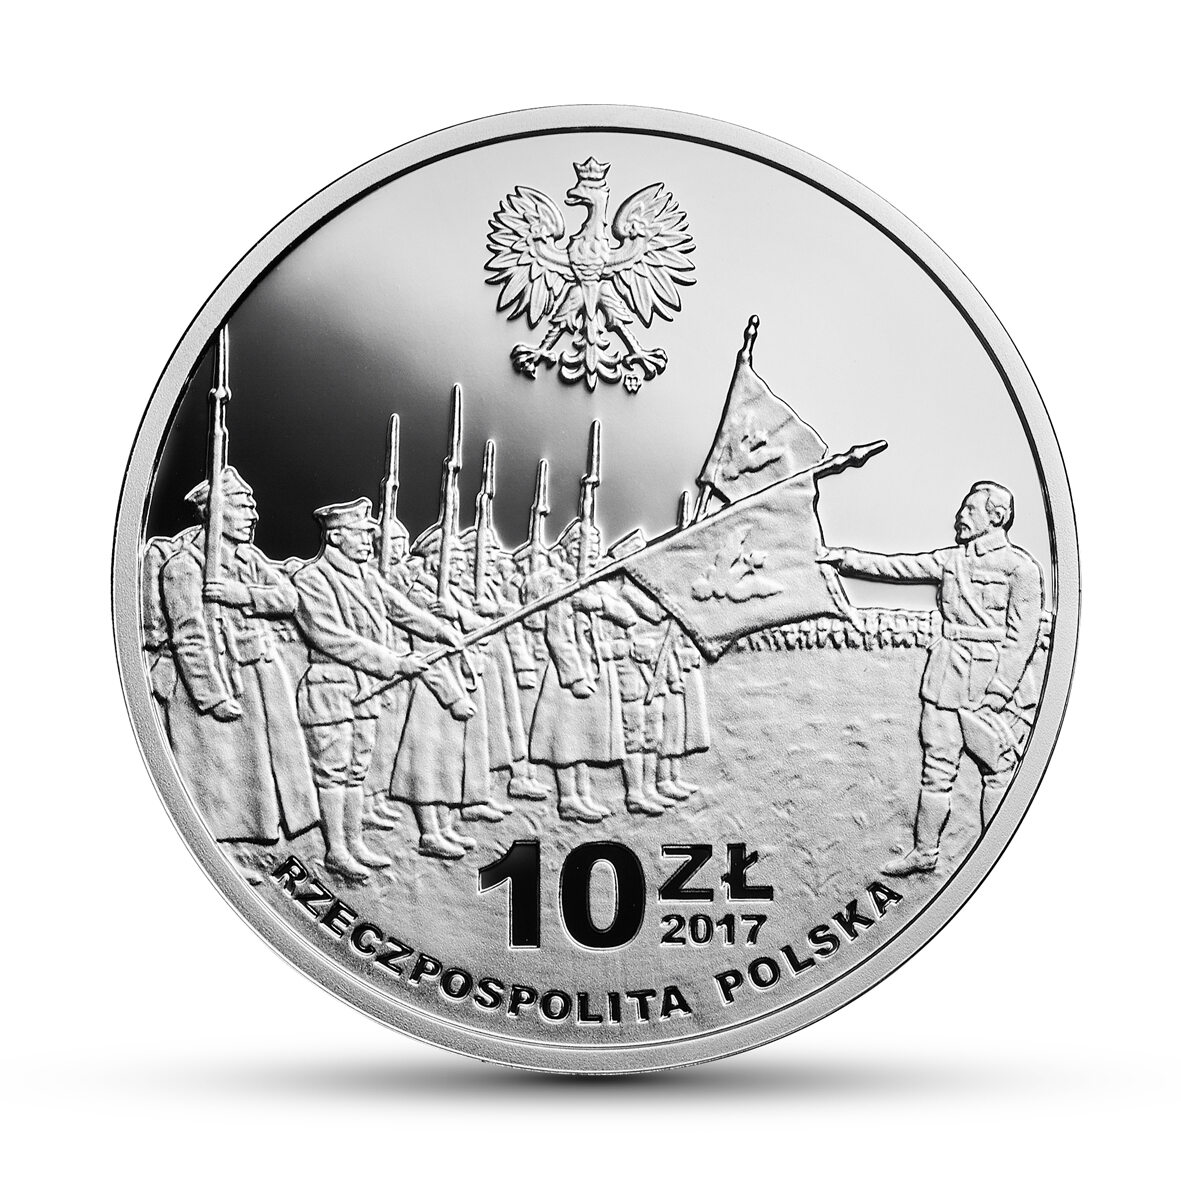 Kolekcjonerska moneta 100-lecie powstania Komitetu Narodowego Polskiego 15 listopada do emisji trafiły także kolekcjonerskie monety o wartości 10 złotych.